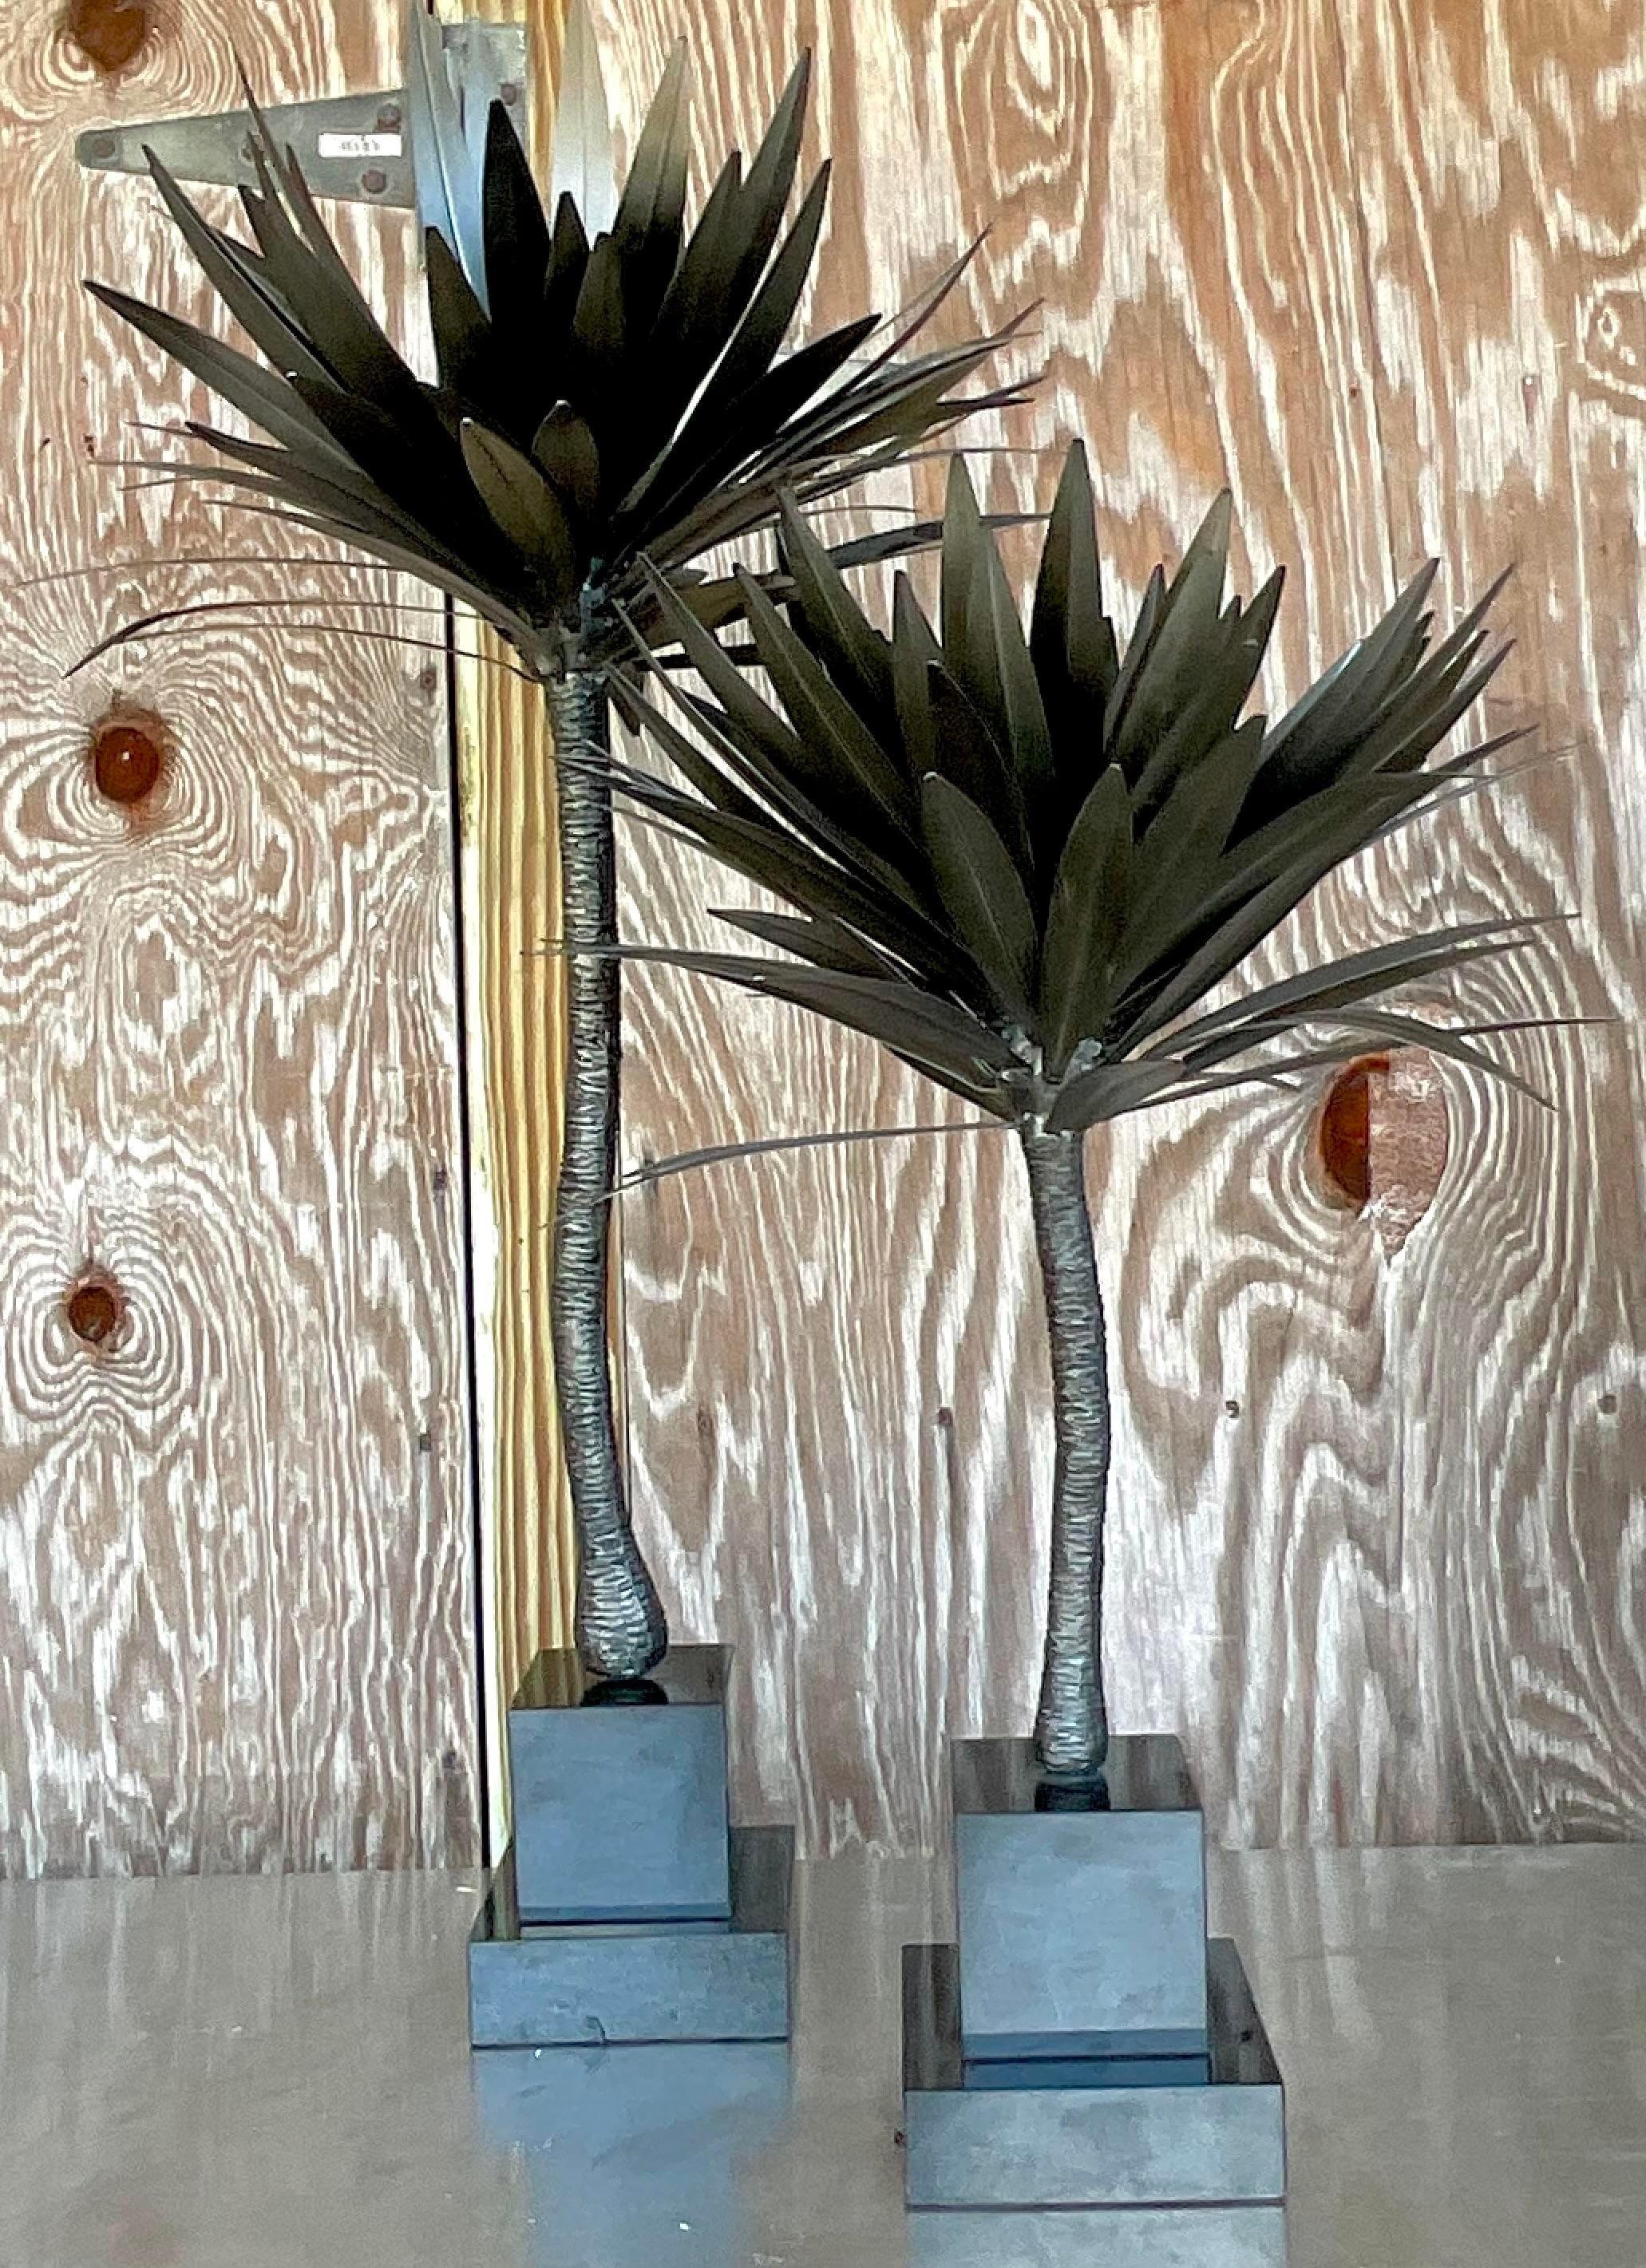 Une fantastique paire de palmiers vintage de la côte. Magnifique finition en bronze foncé sur métal découpé à l'emporte-pièce sur des socles en marbre noir. Acquis d'une propriété de Palm Beach.

Hauteur de l'arbre plus petite 28 